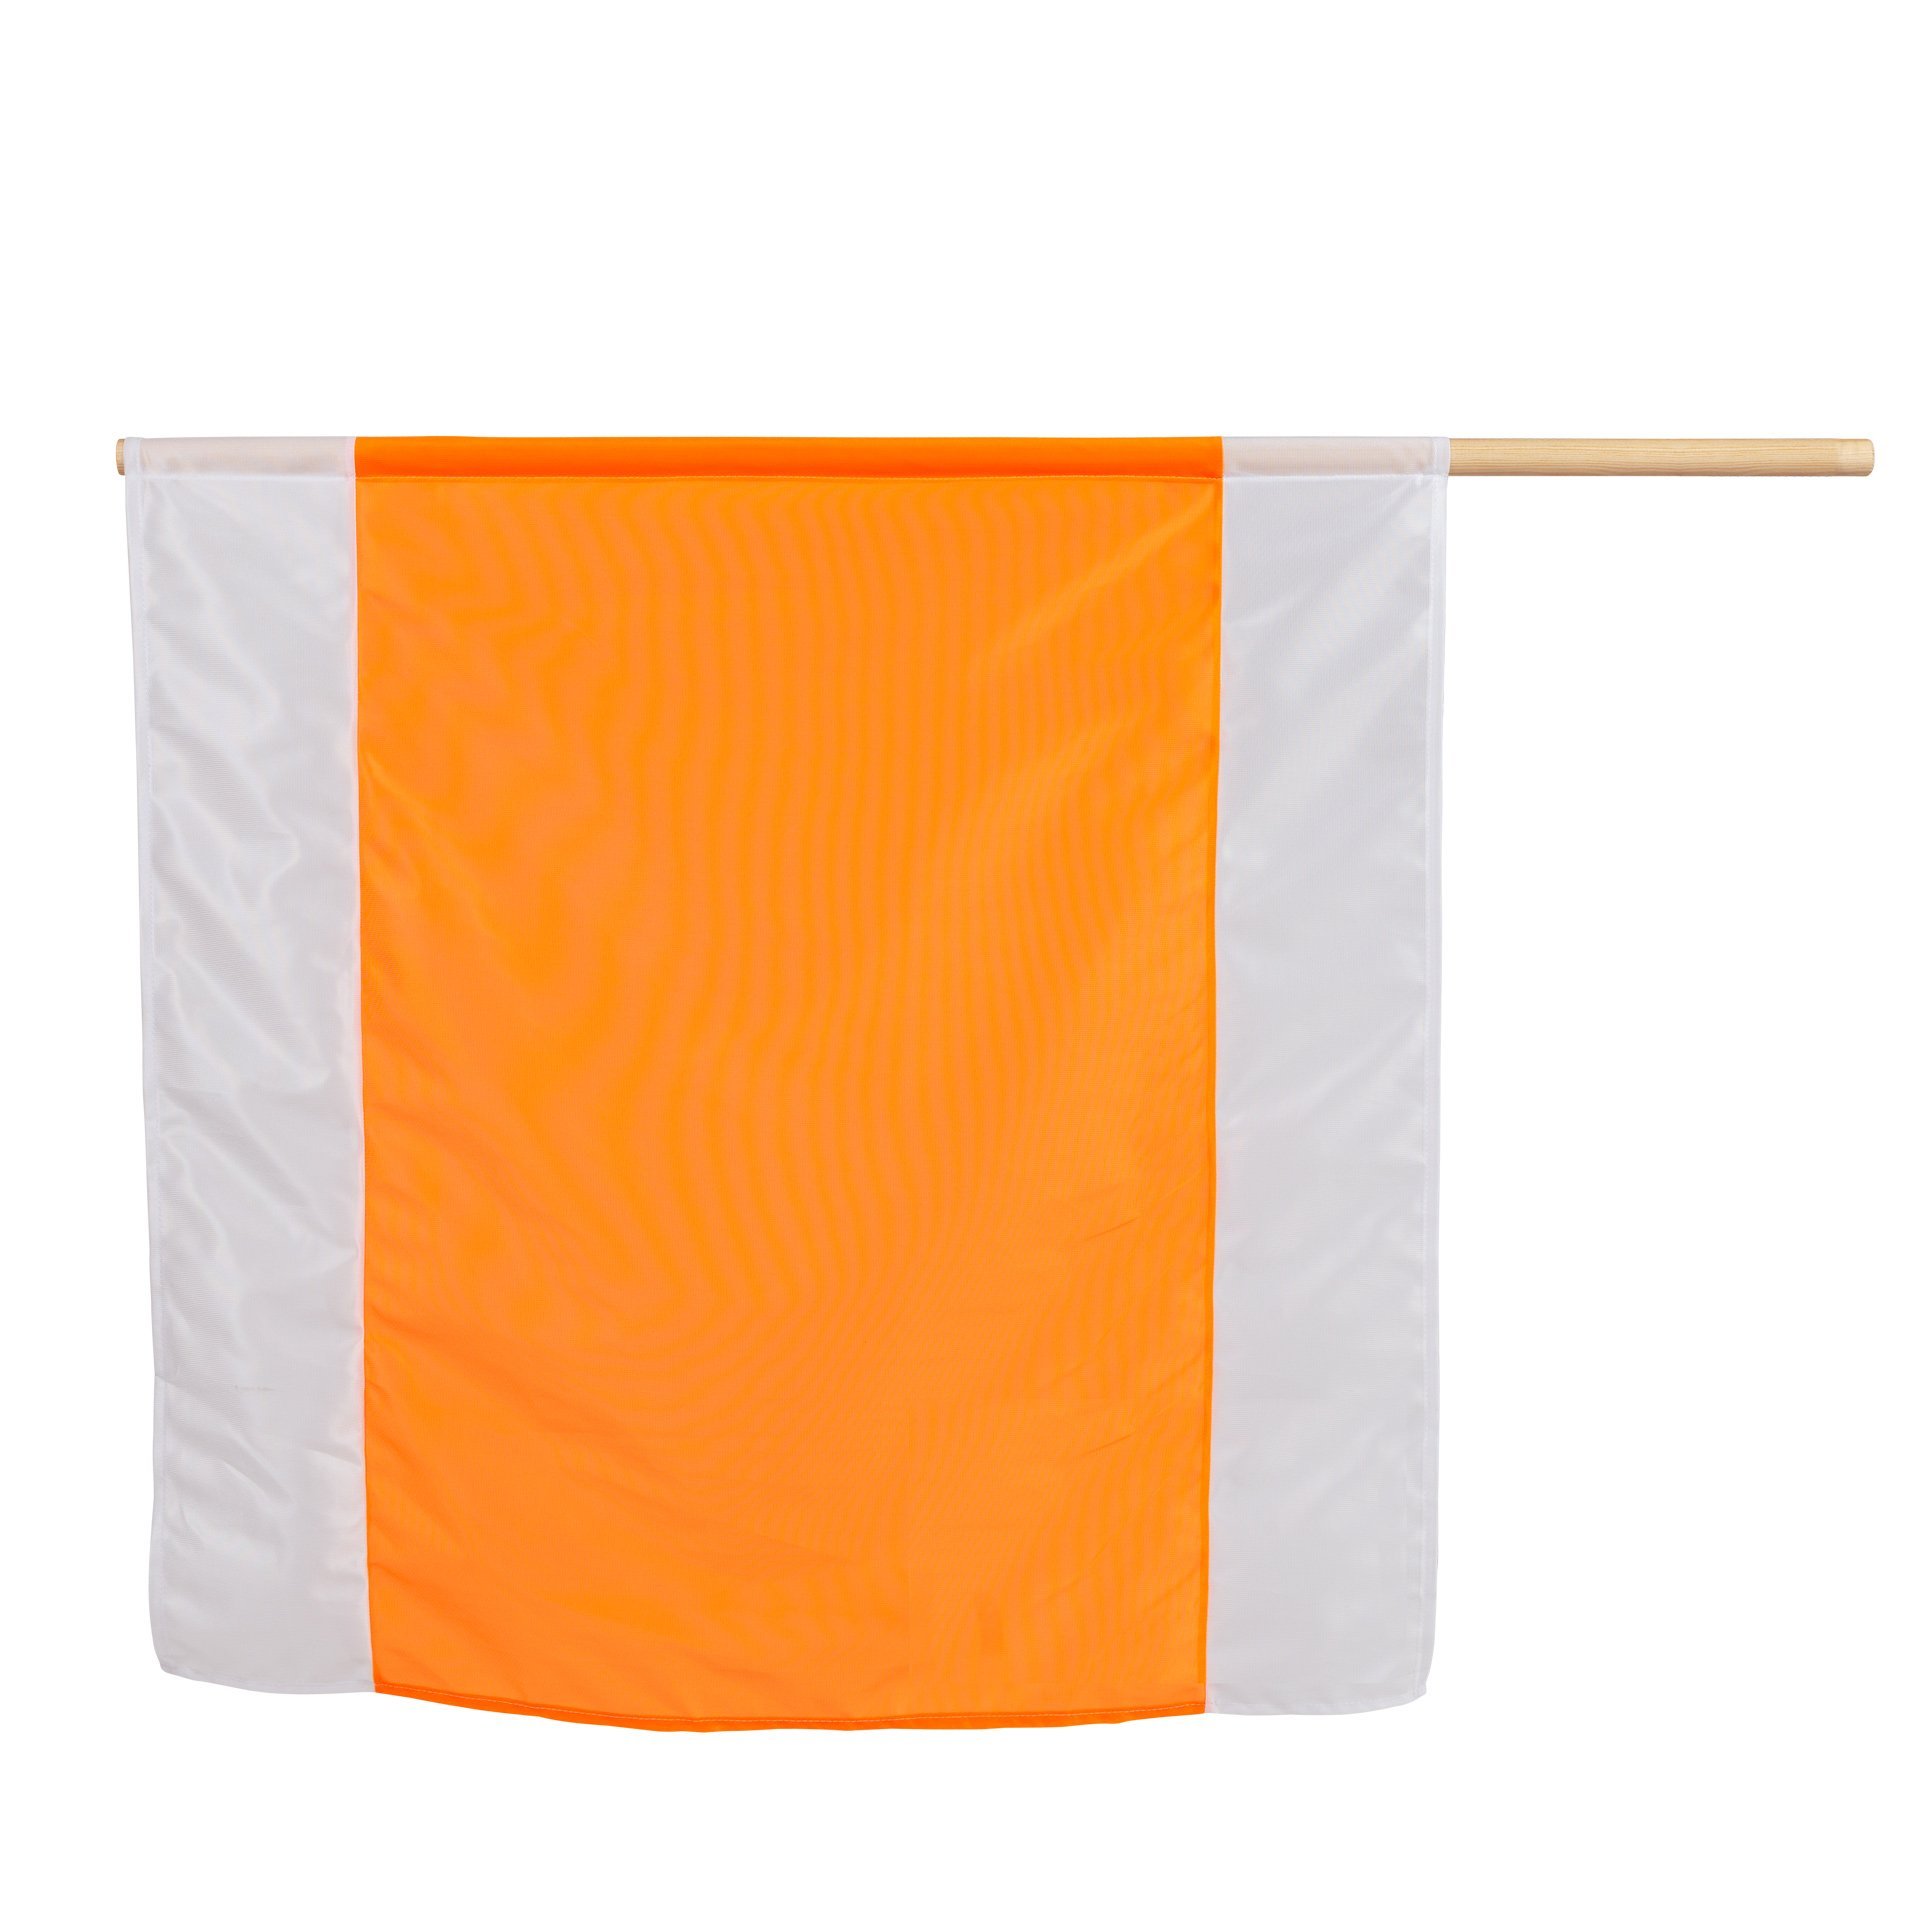 NESTLE Warnflagge weiß/orange/weiß, 75x75cm / VPE = 20 Stück (von Nr.  19803000)